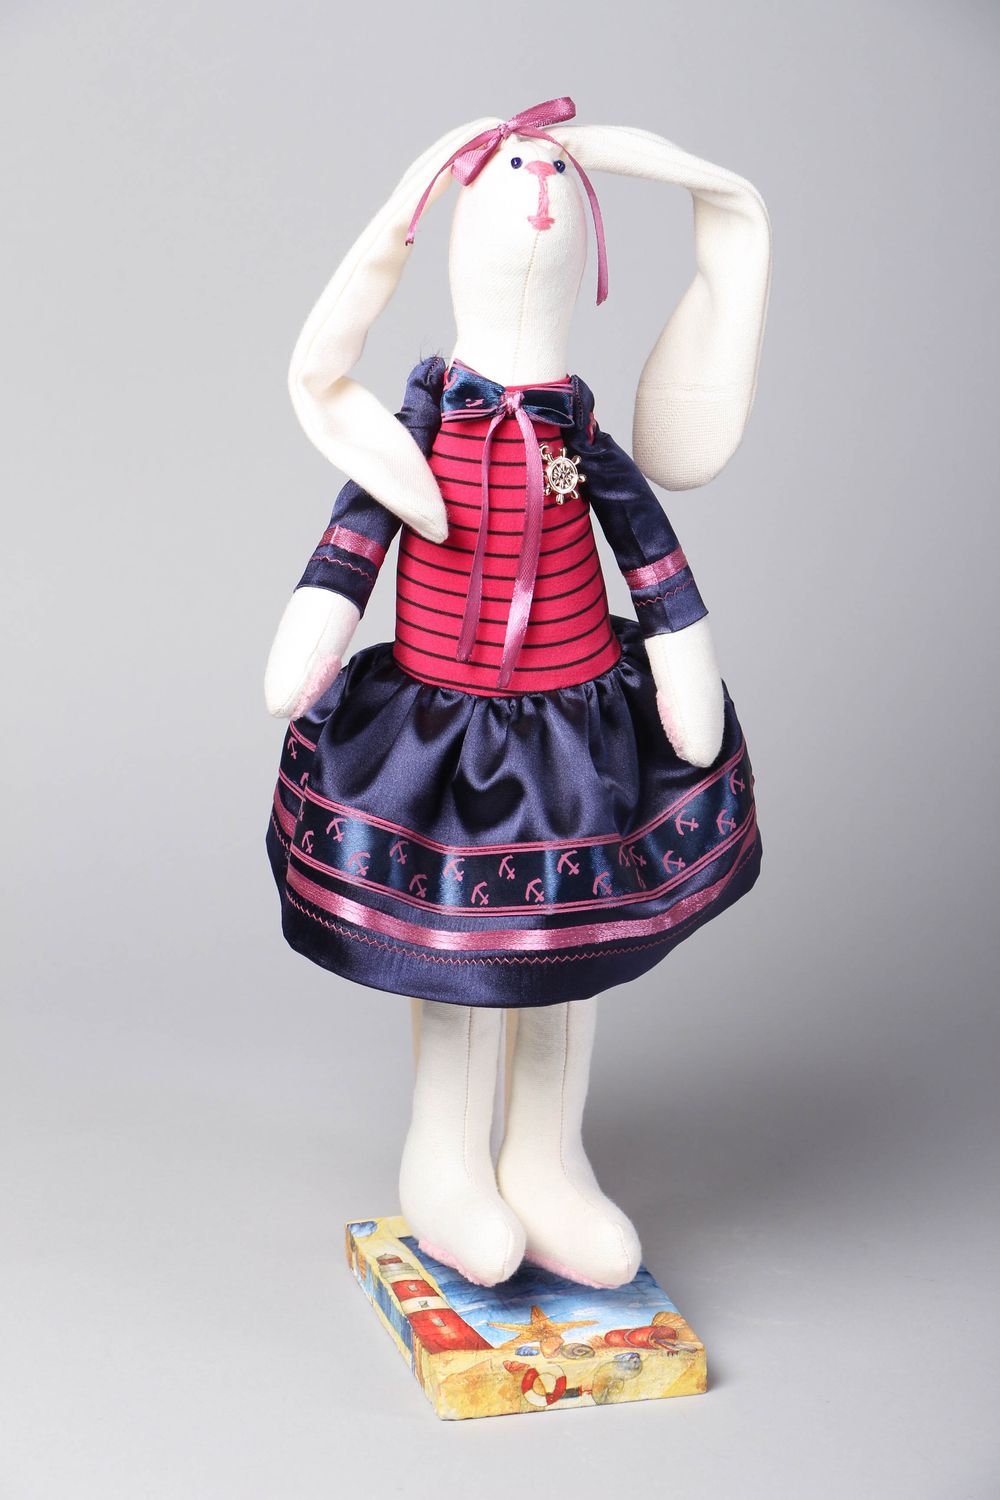 Мягкая кукла на подставке для декора интерьера Зайка в платье фото 1